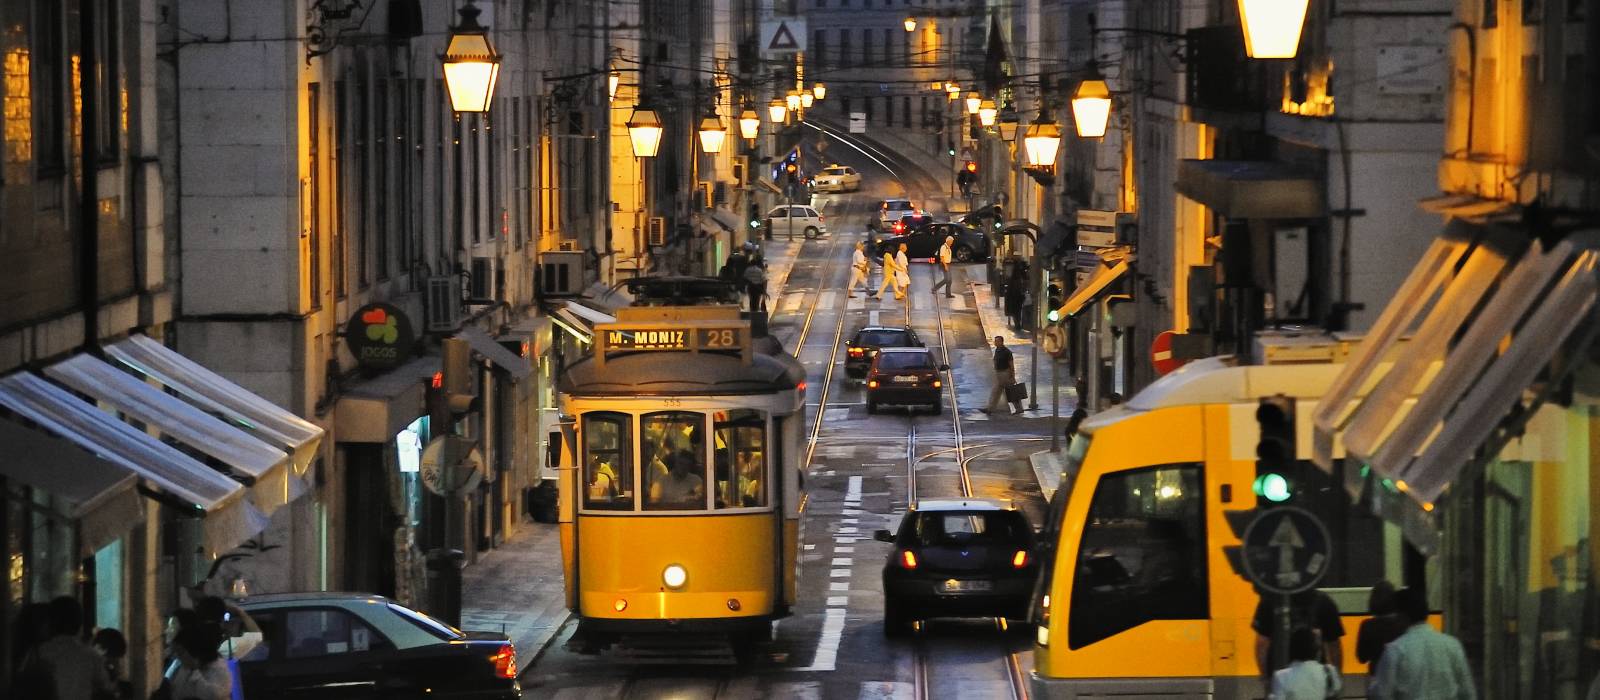 Offres Hôtel Vincci de Lisbonne Baixa - Réservez 3 nuits et économisez